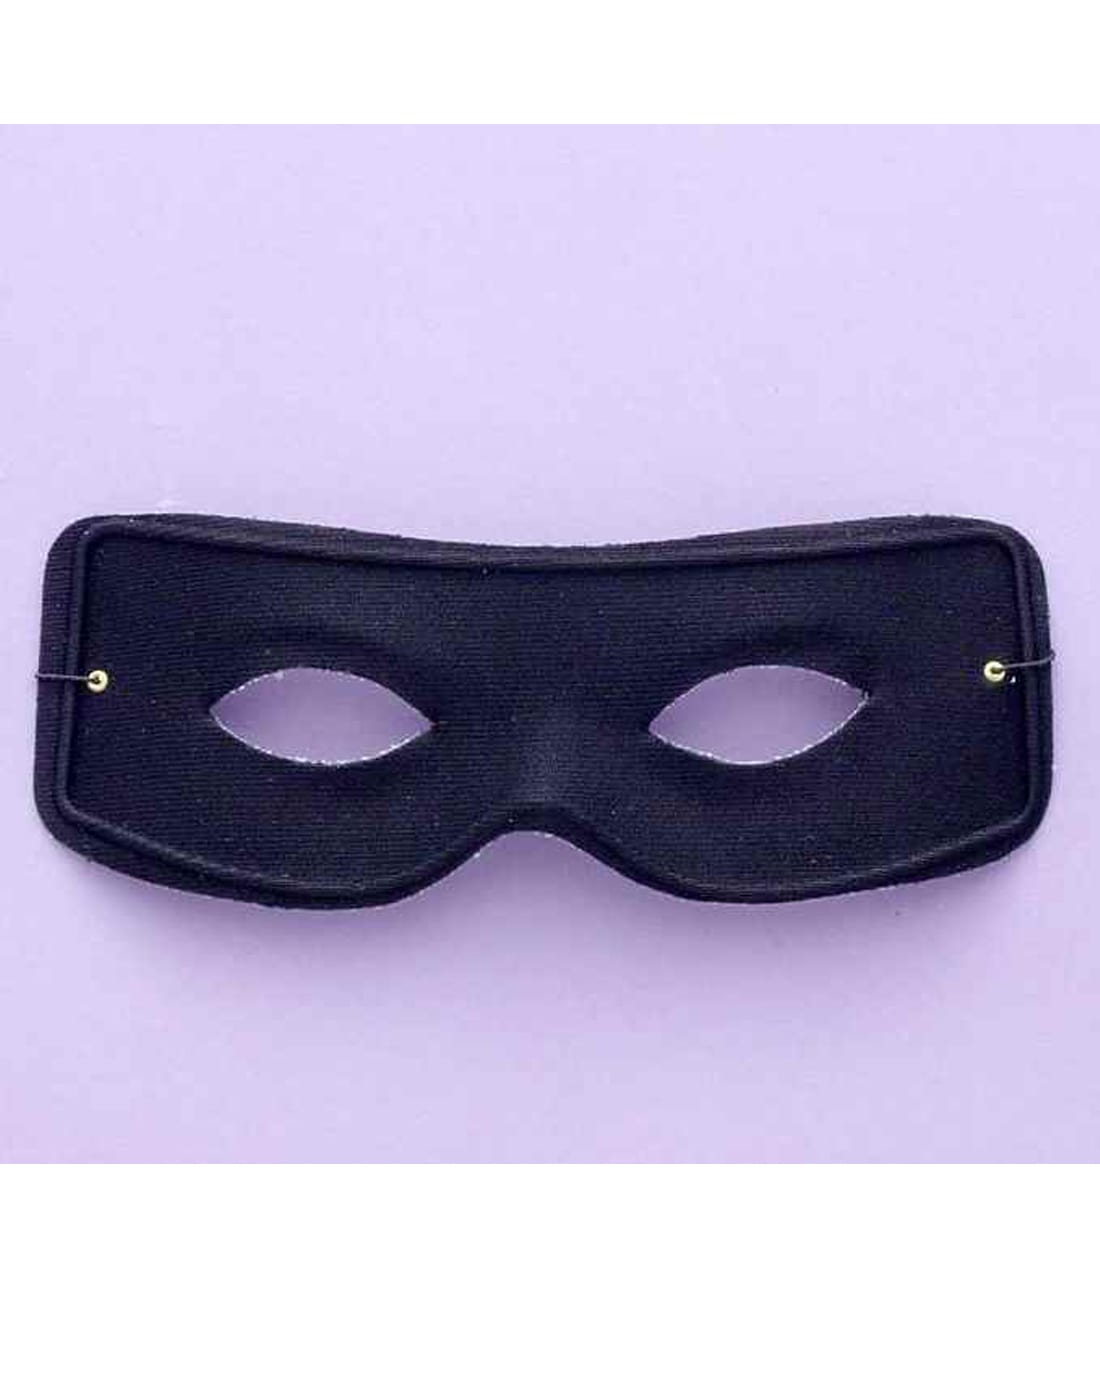 Masked Man Mask w/ Ties 1